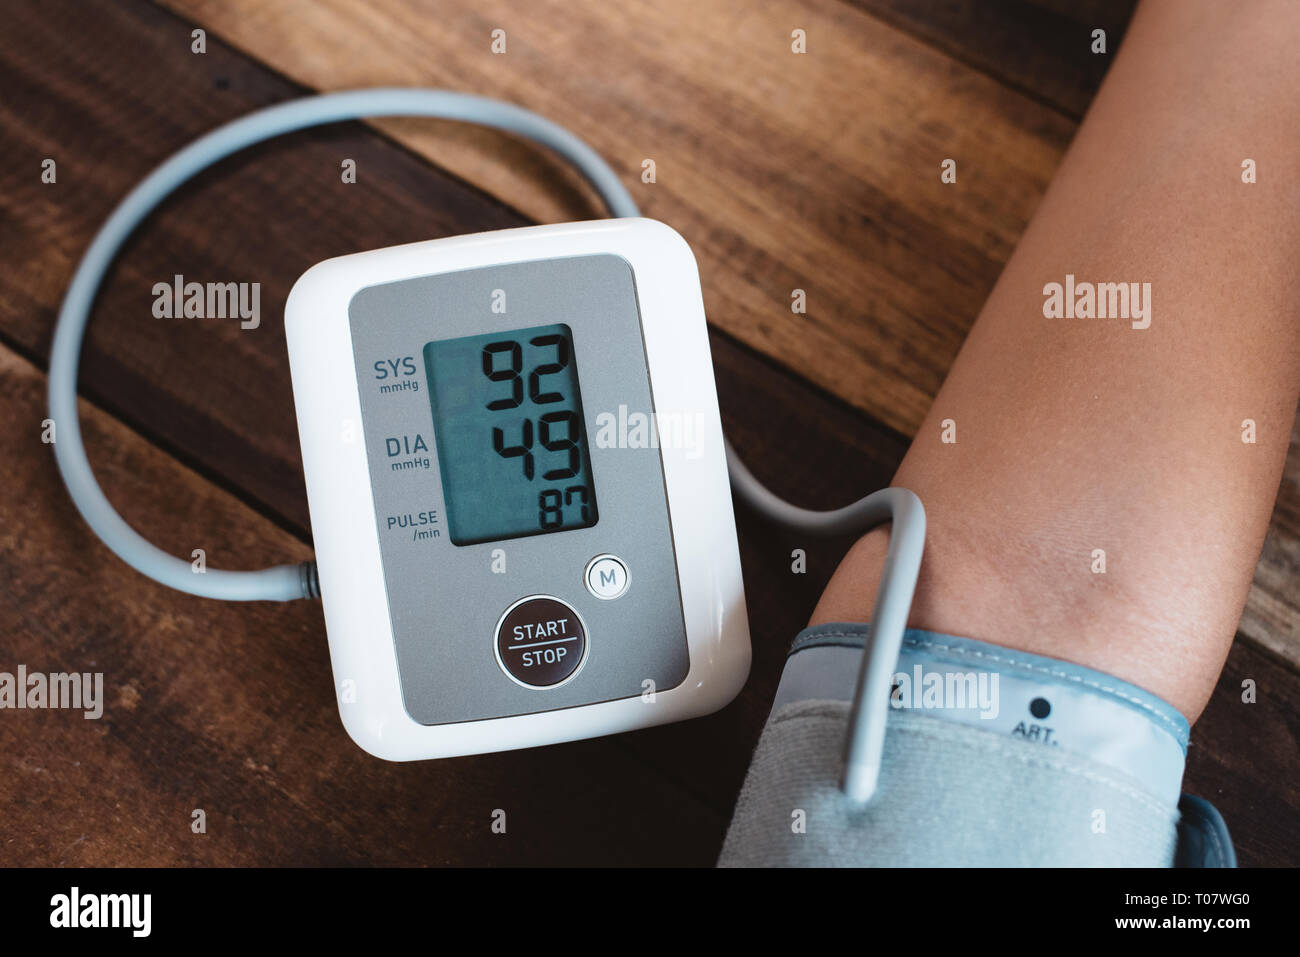 Der Mensch seinem Blutdruck mit elektronischen Blutdruckmessgerät oder  Sphygmomanometer auf einem Holztisch. Konzept des Gesundheitswesen,  medizinische instrume Stockfotografie - Alamy